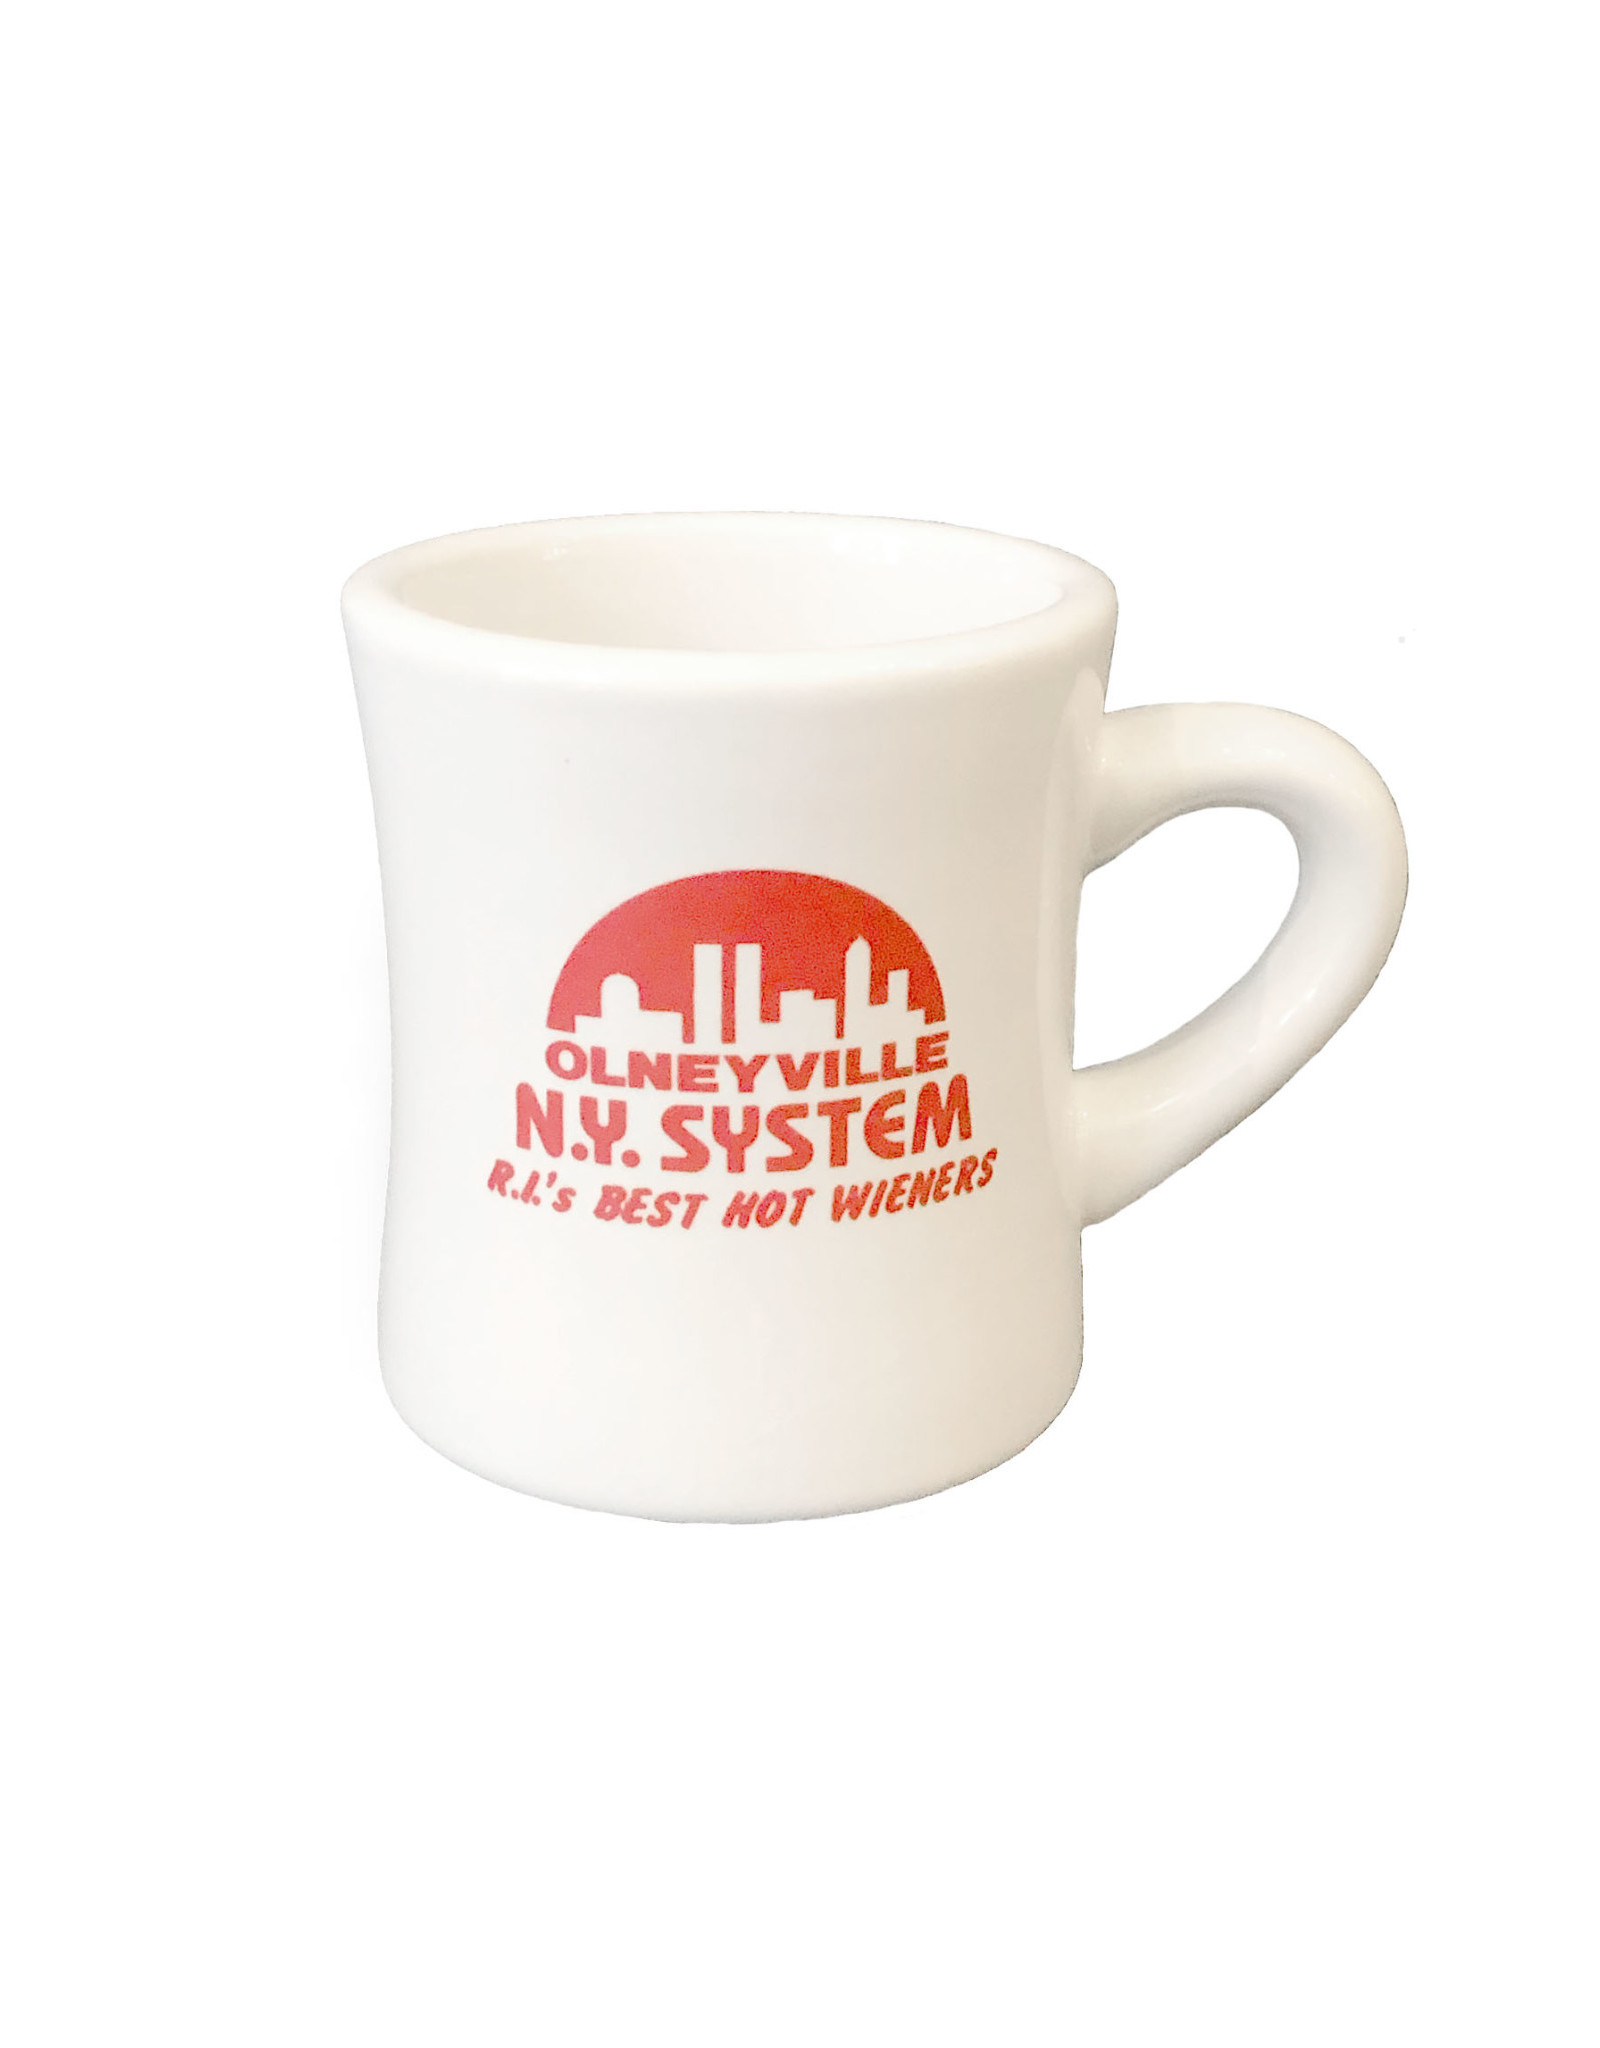 Olneyville NY System Mug